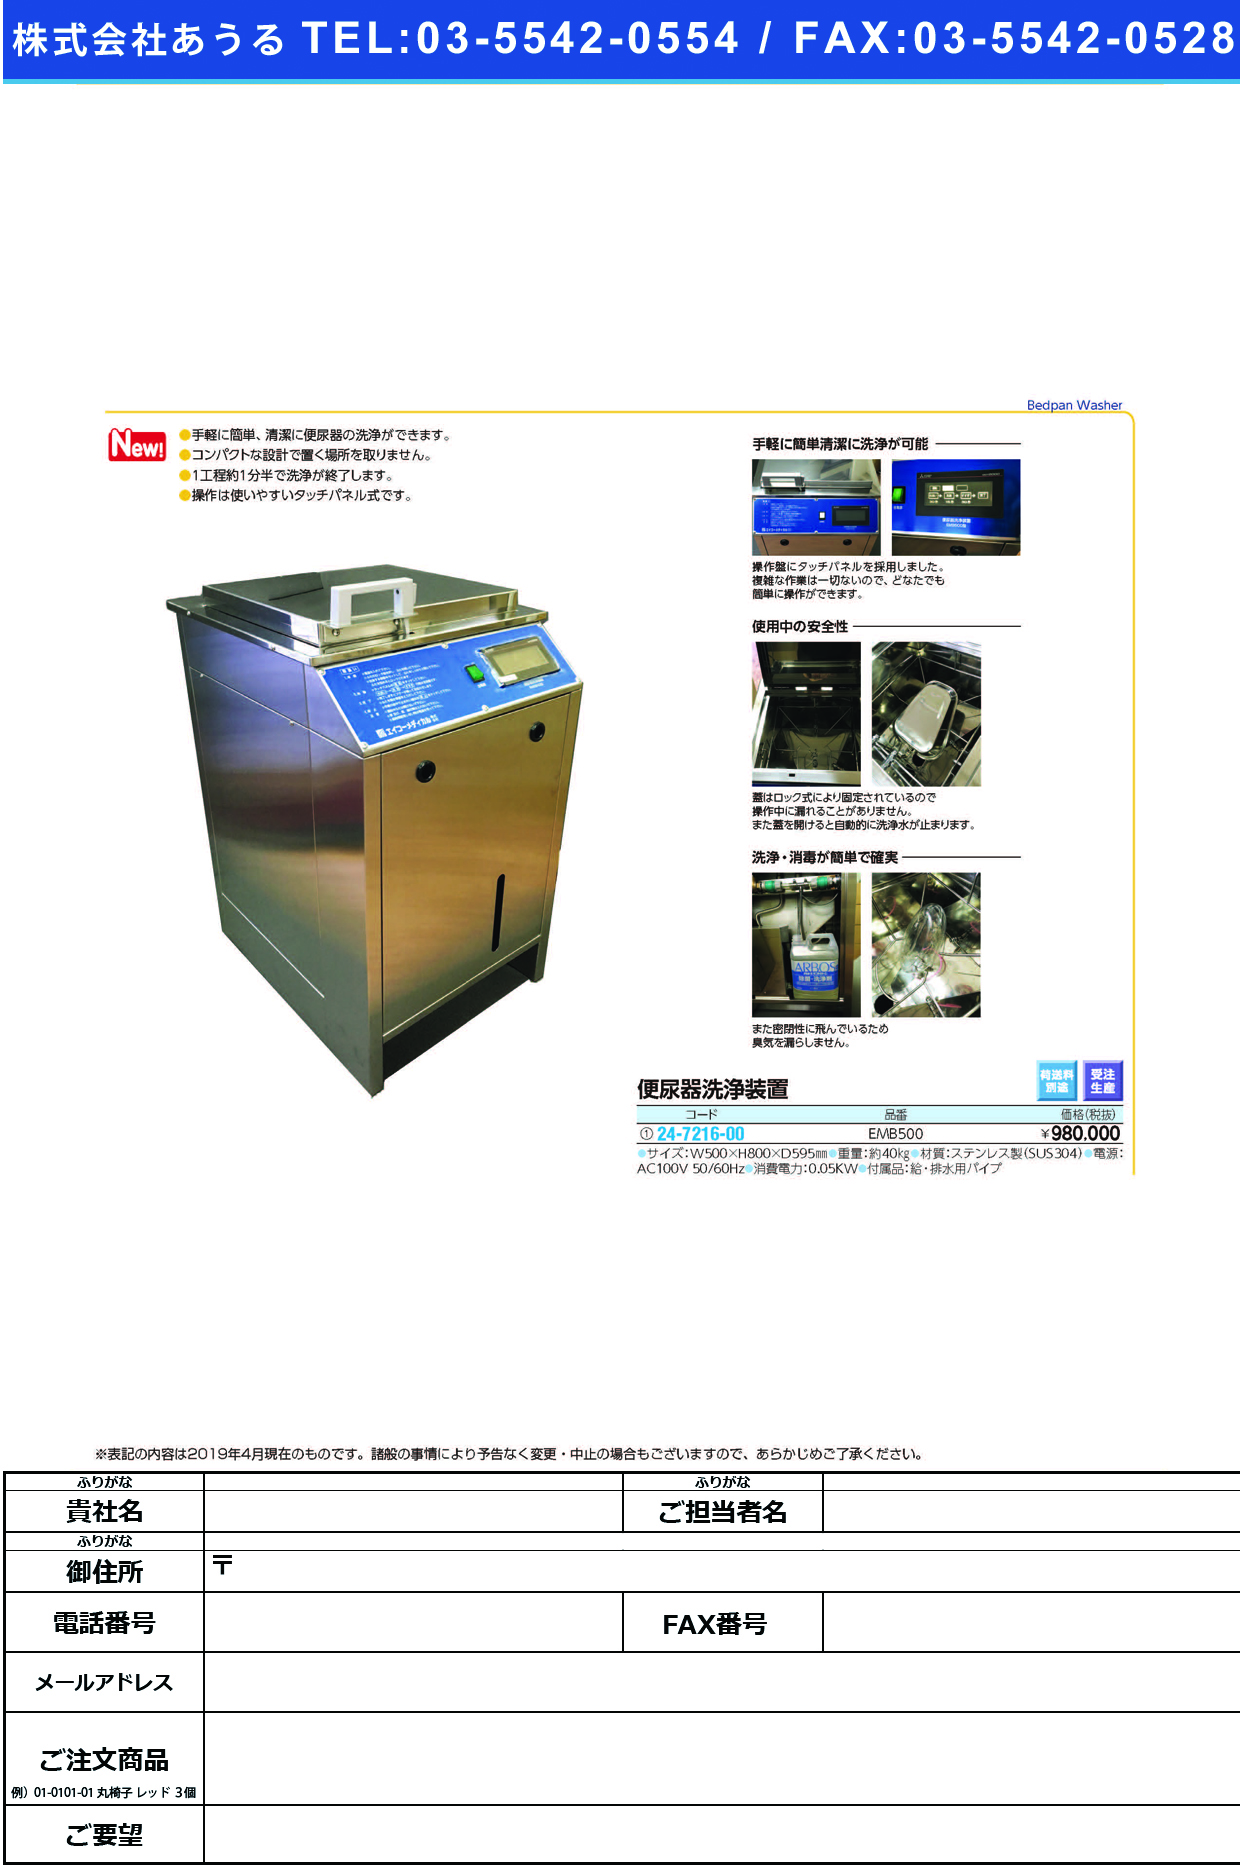 (24-7216-00)便尿器洗浄装置EMB500 ﾍﾞﾝﾆｮｳｷｾﾝｼﾞｮｳｿｳﾁ(エイコーメディカル)【1台単位】【2019年カタログ商品】